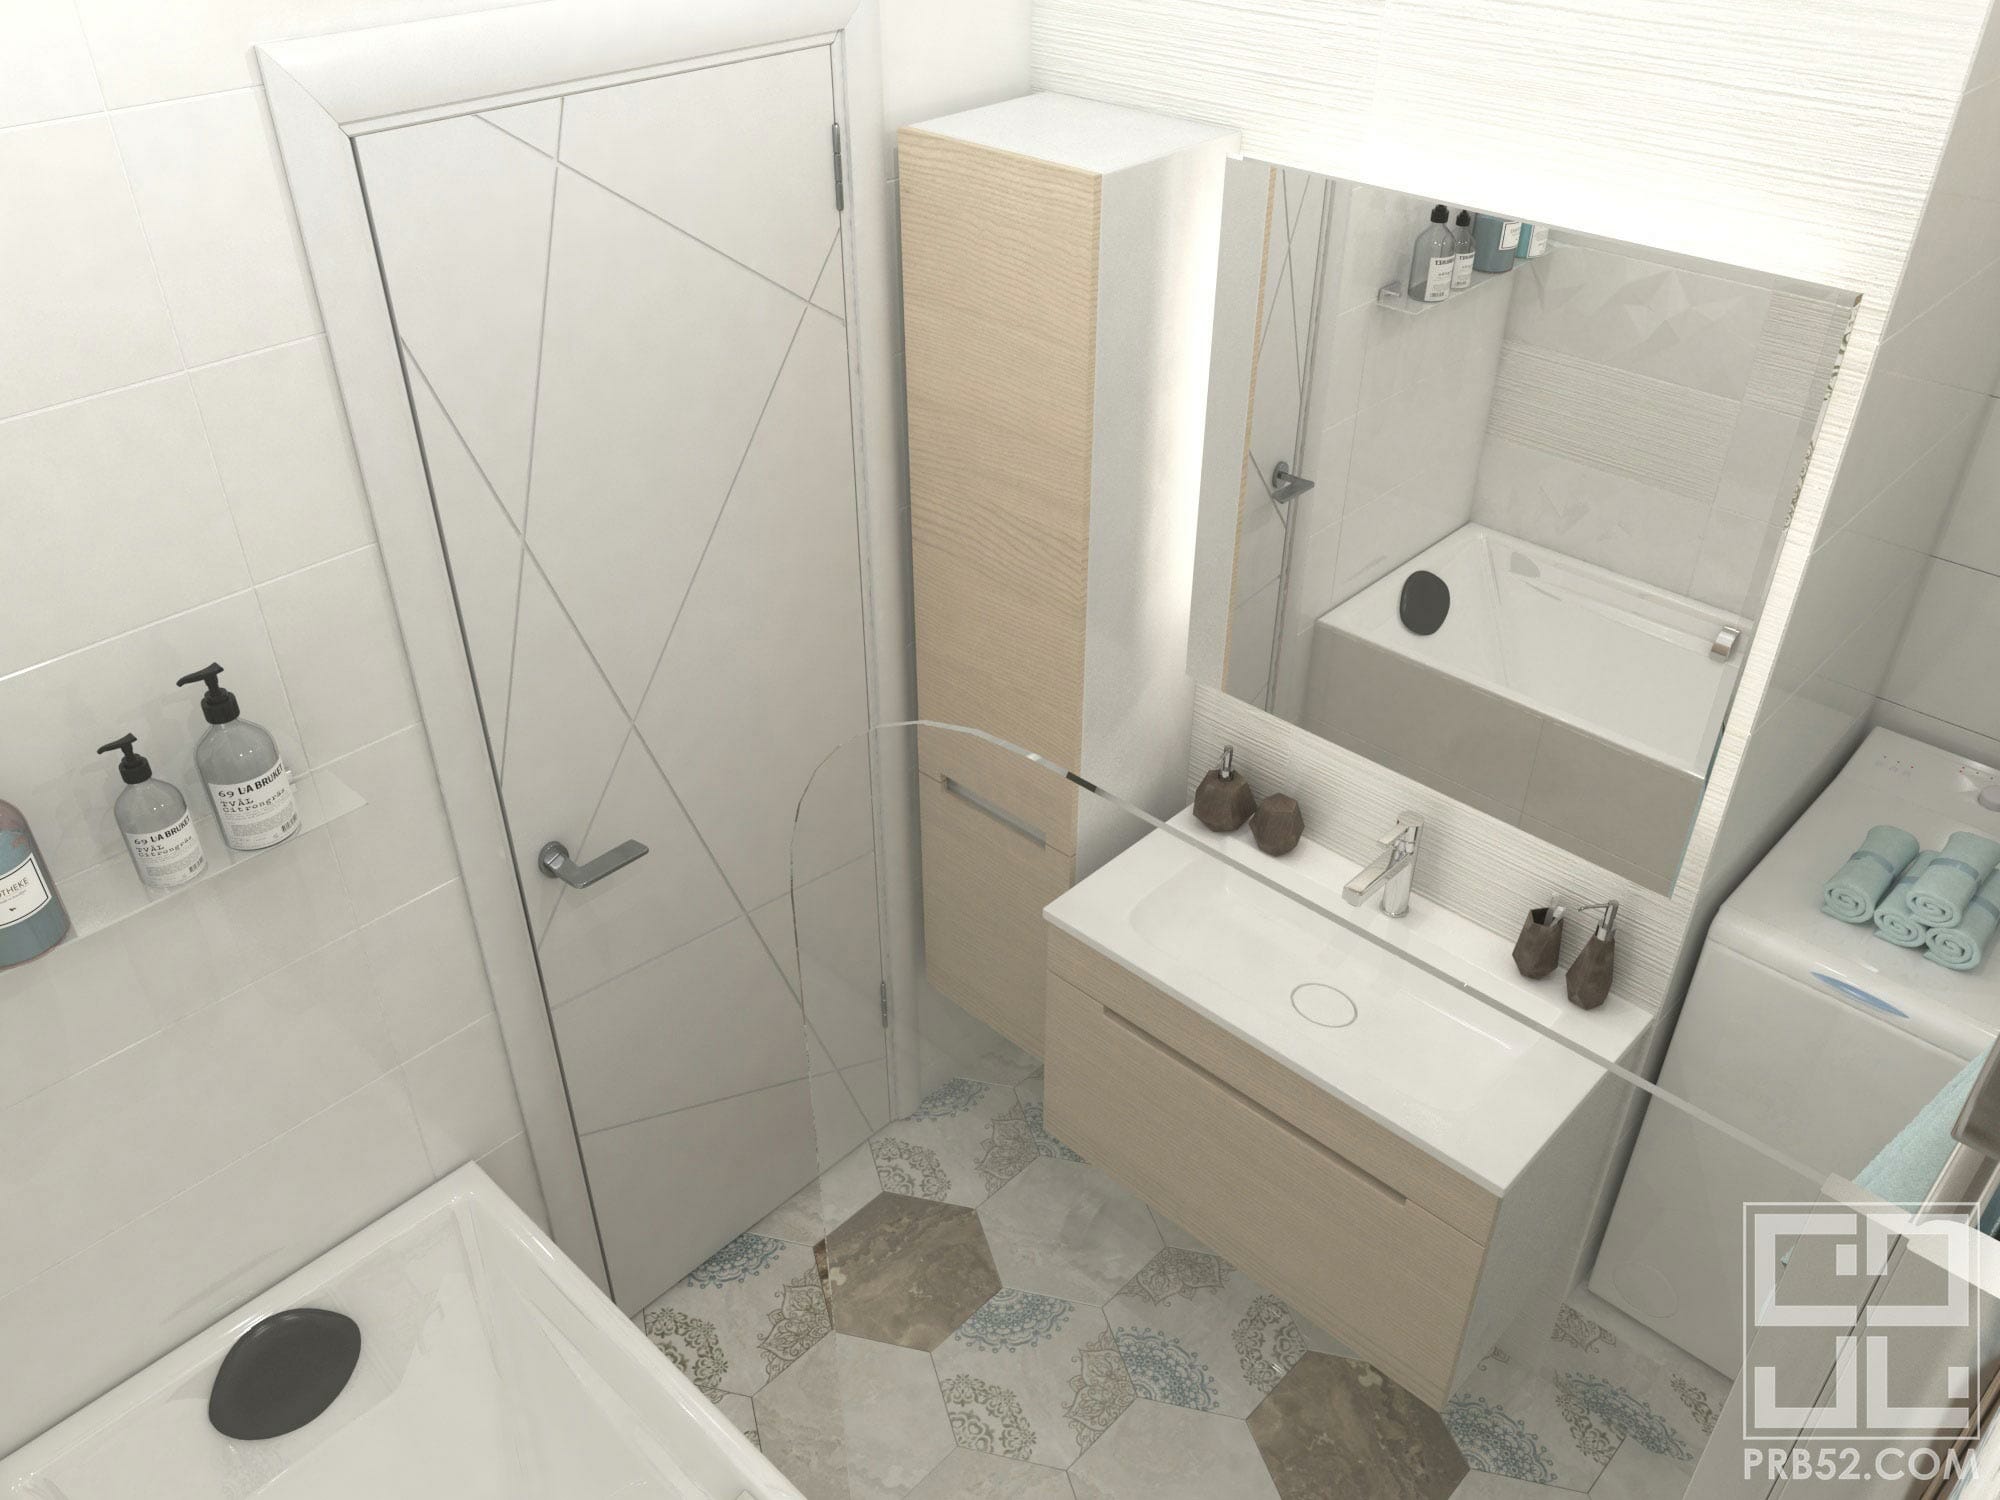 дизайн интерьера ванной комнаты с подсветкой